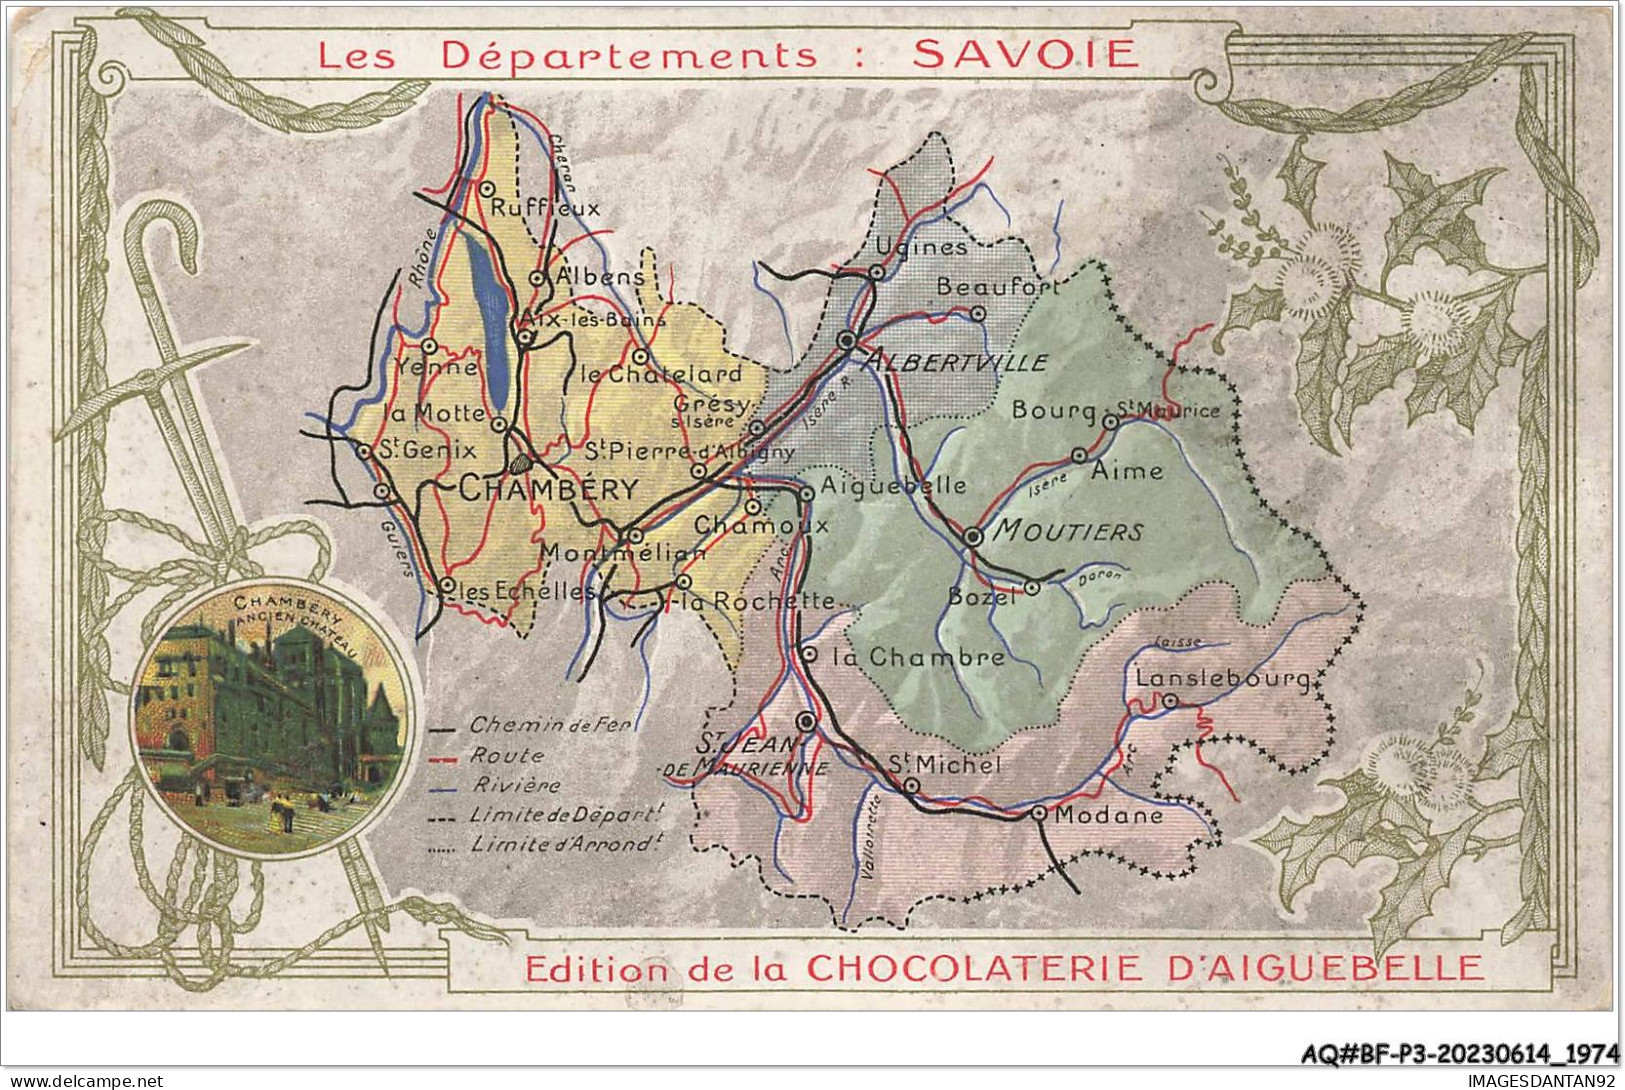 AQ#BFP3-CHROMOS-0985 - CHOCOLAT D'AIGUEBELLE - Les Départements - Savoie - Aiguebelle